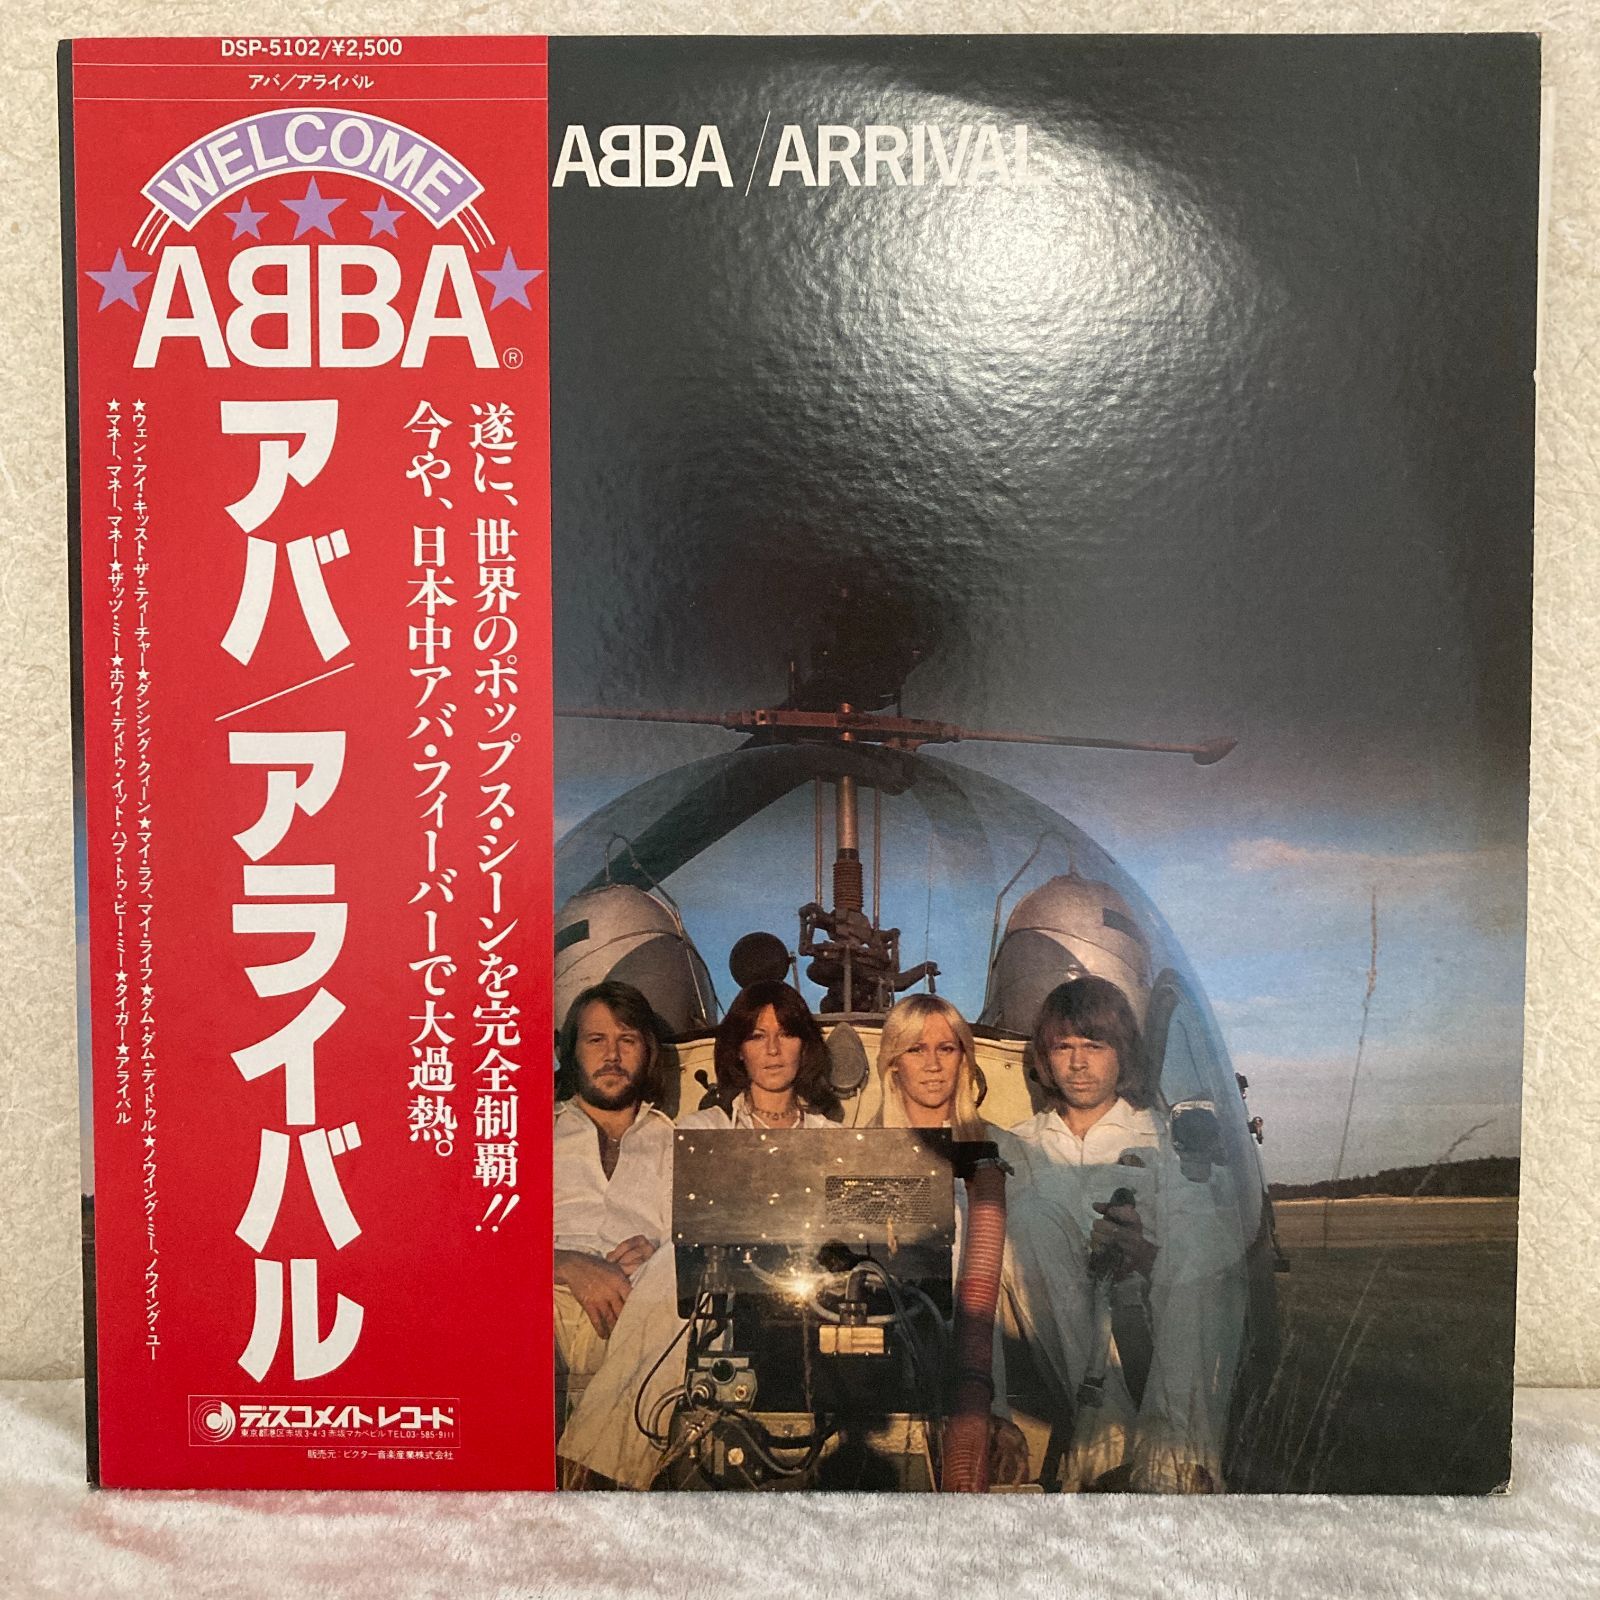 LP レコード ABBA ARRIVAL アバ アライバル 国内盤 - メルカリ